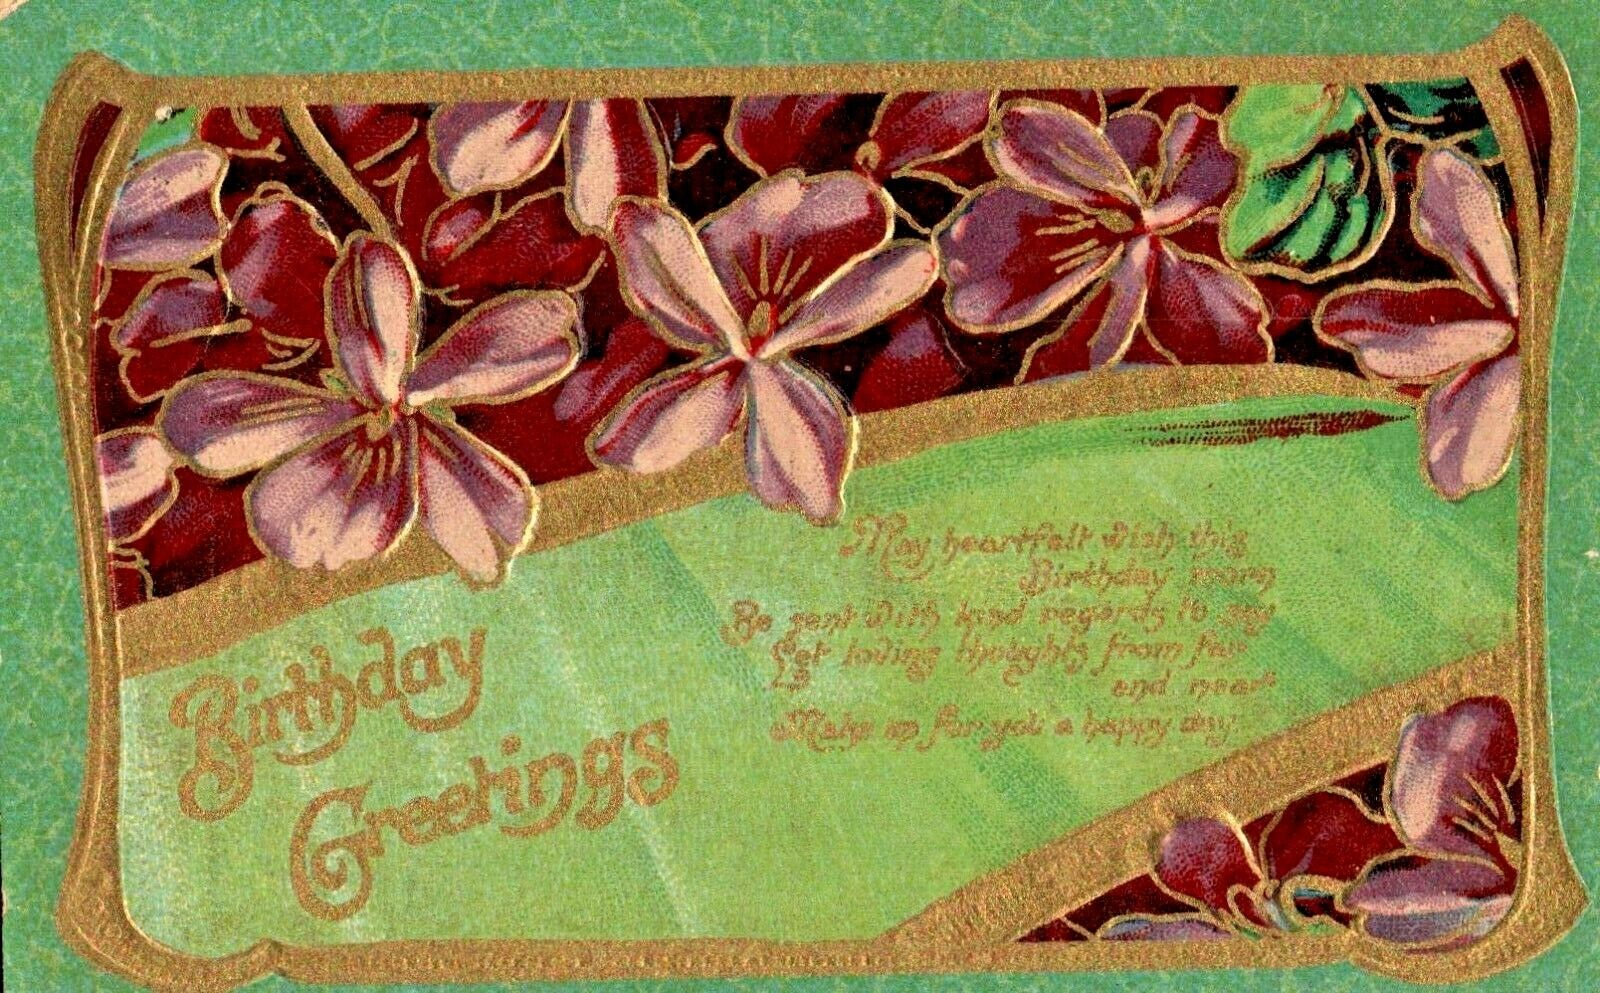 c.1910 Birthday Greetings Floral Vintage Postcard Green Gold Embossed